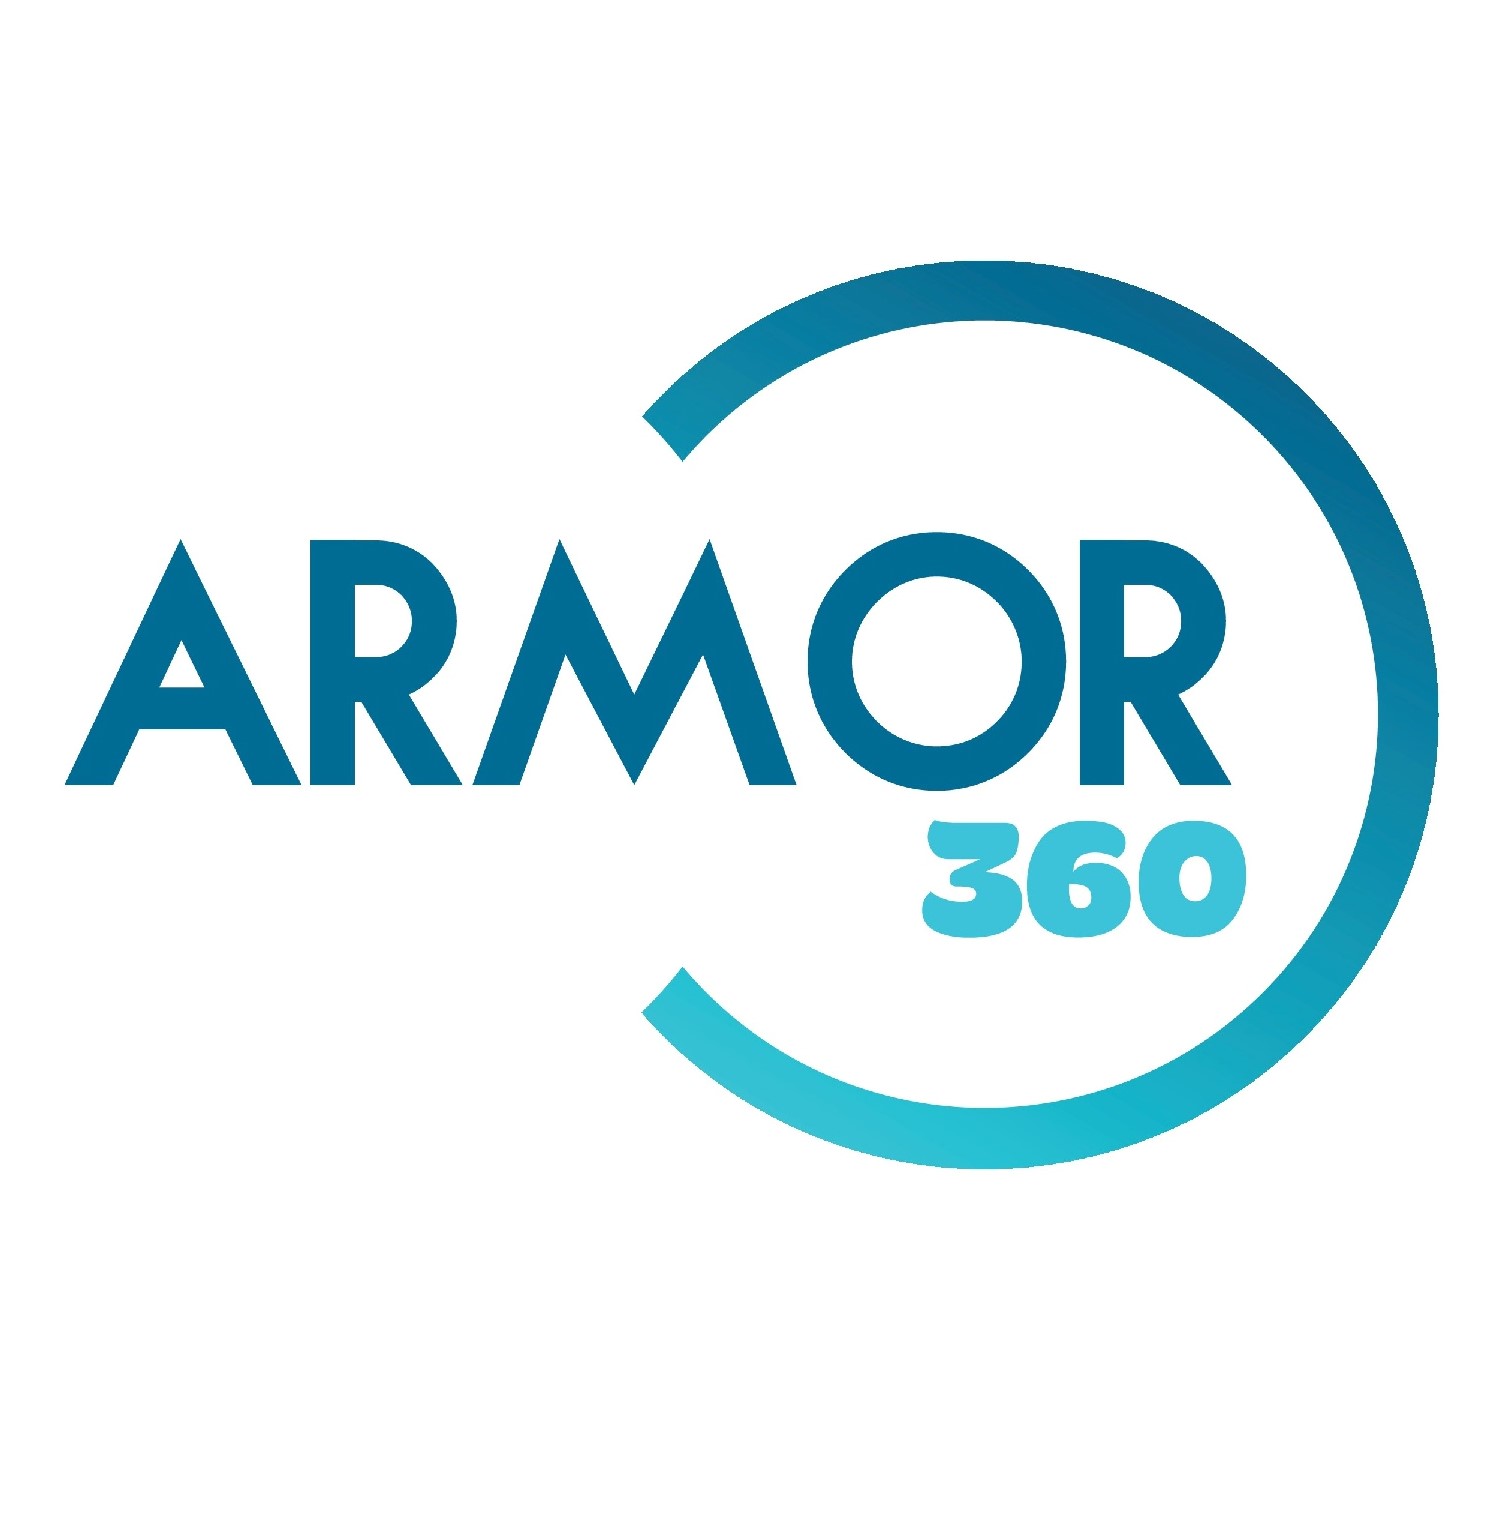 ARMOR360